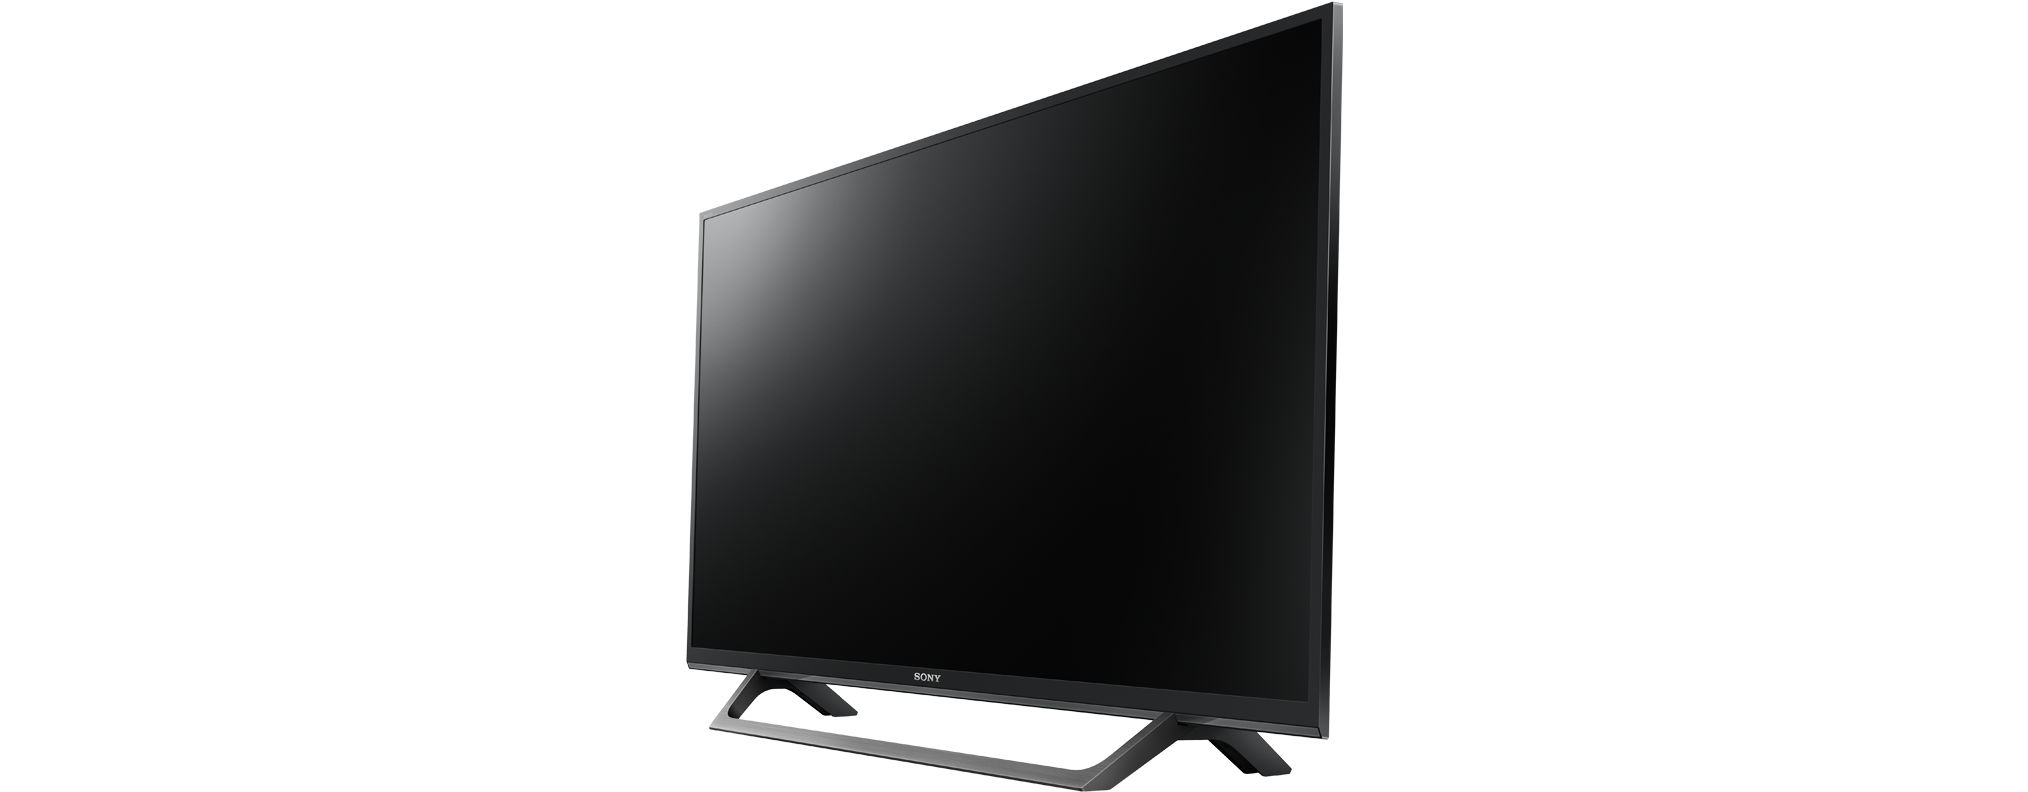 Linux) / HD-ready, KDL-32W6605 SONY (Flat, cm, 32 SMART TV, 80 LED TV Zoll